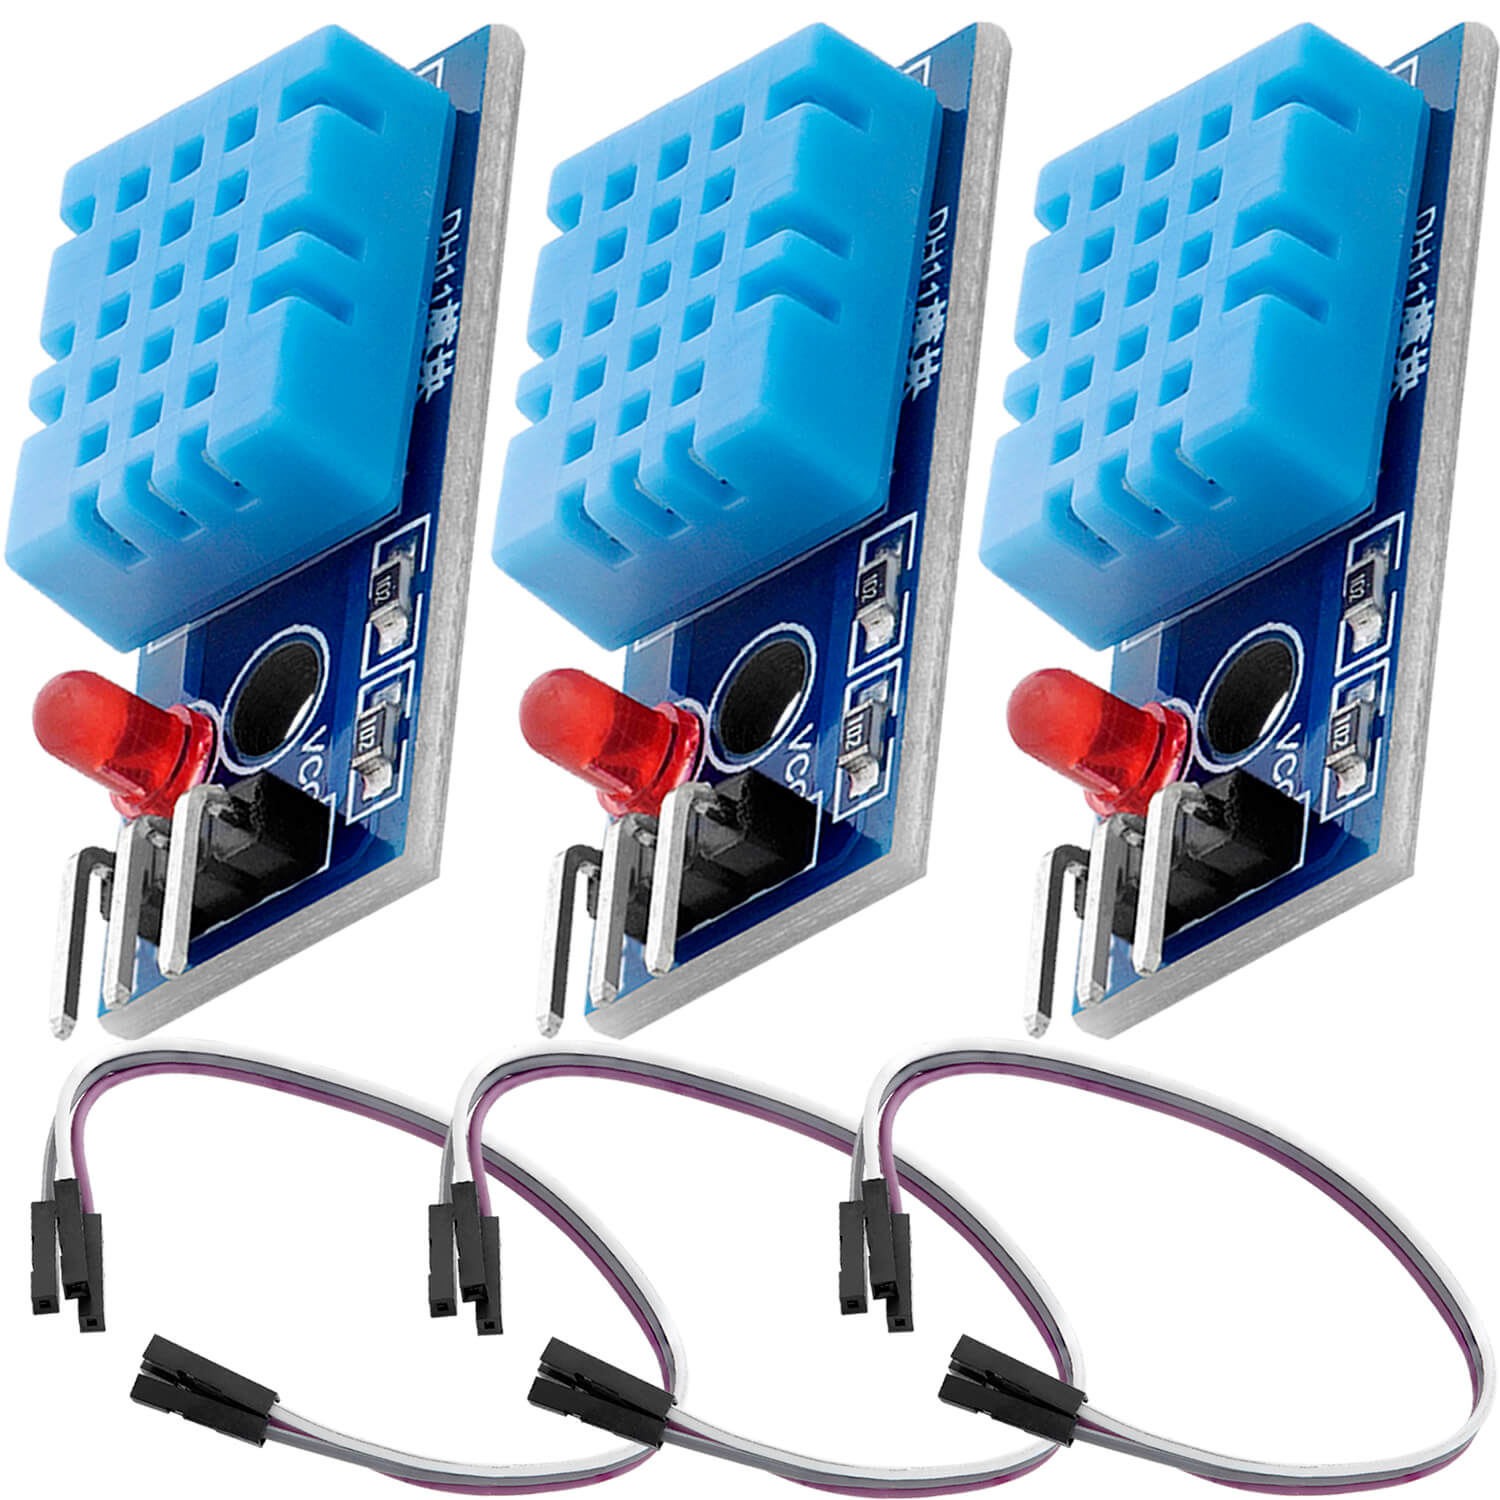 DHT11 Breakout Modul mit Platine und Kabel Temperatursensor und Luftfeuchtigkeitssensor kompatibel mit Arduino und Raspberry Pi - AZ-Delivery